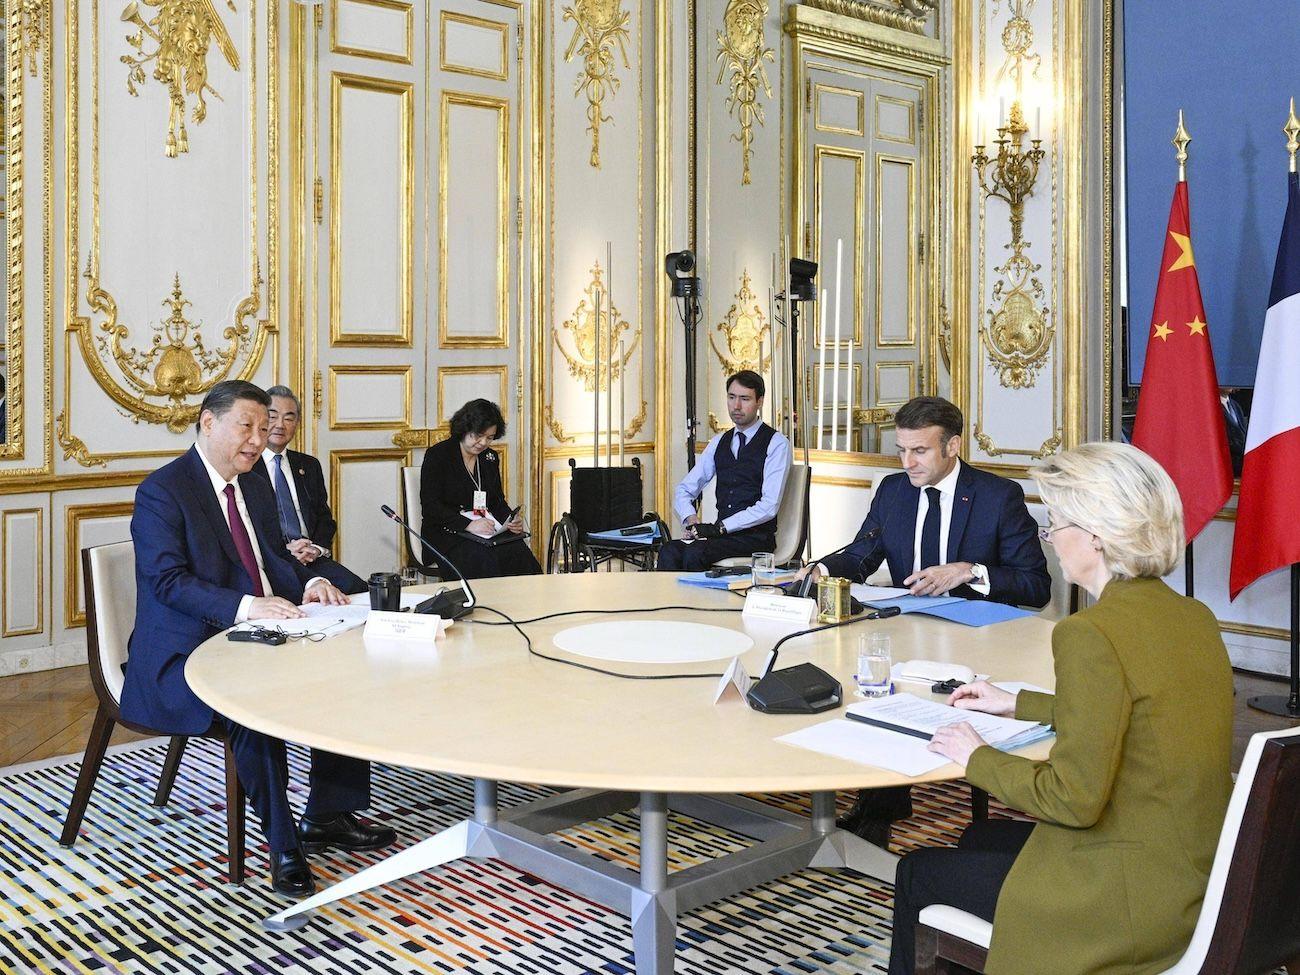 China News, China Europa, Deutschland, Frankreich, Serbien, Ungarn: Der chinesische Präsident Xi Jinping bei einem trilateralen Treffen mit dem französischen Präsidenten Emmanuel Macron und der Präsidentin der EU-Kommission Ursula von der Leyen 